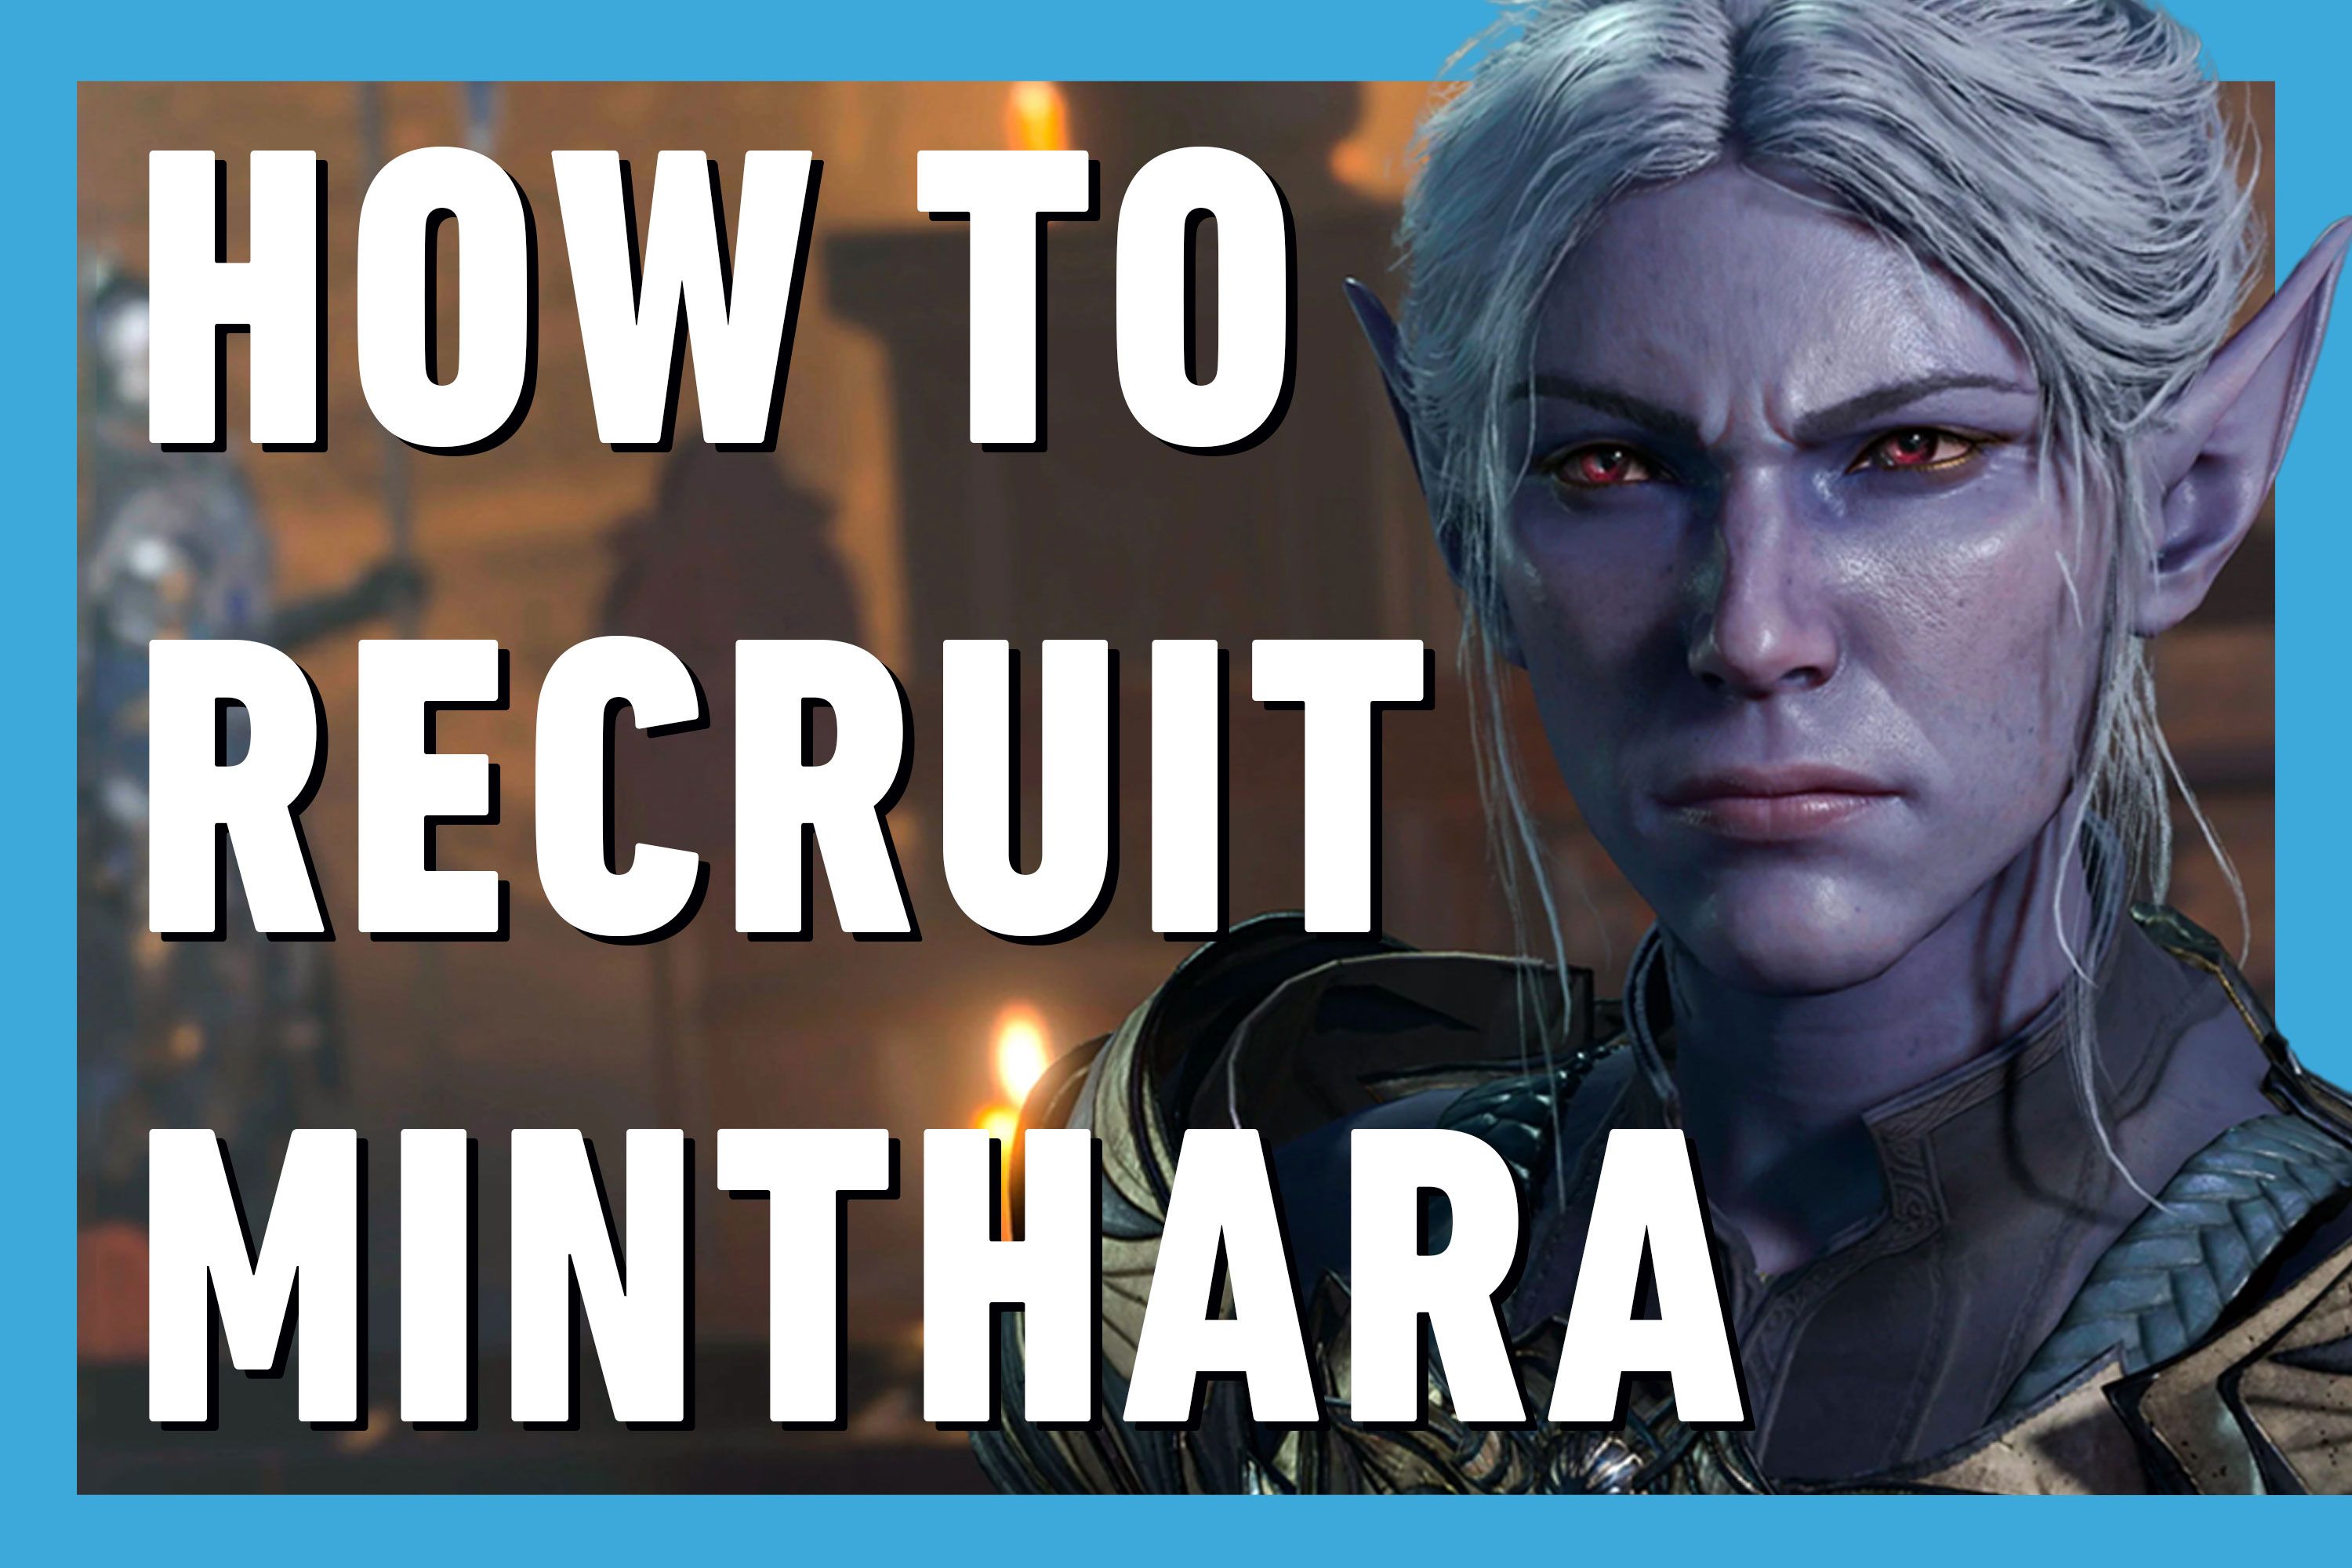 Baldurs Gate 3: How to recruit Minthara in BG3?